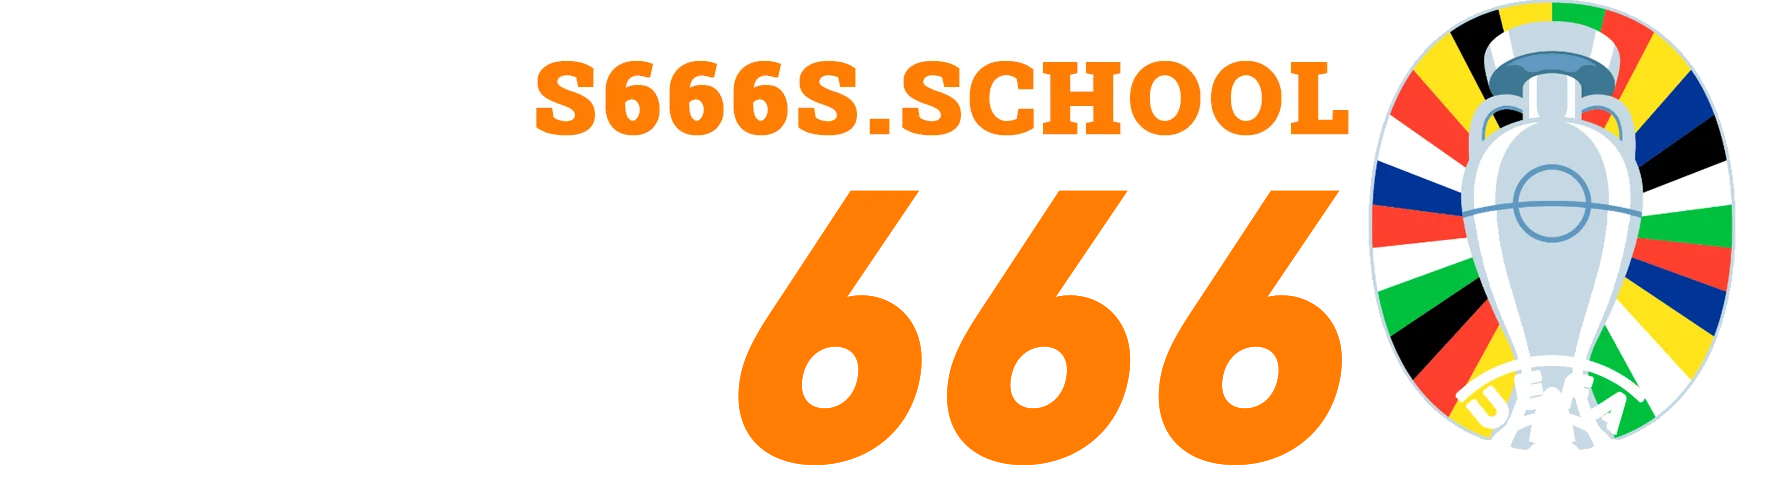 Logo S666